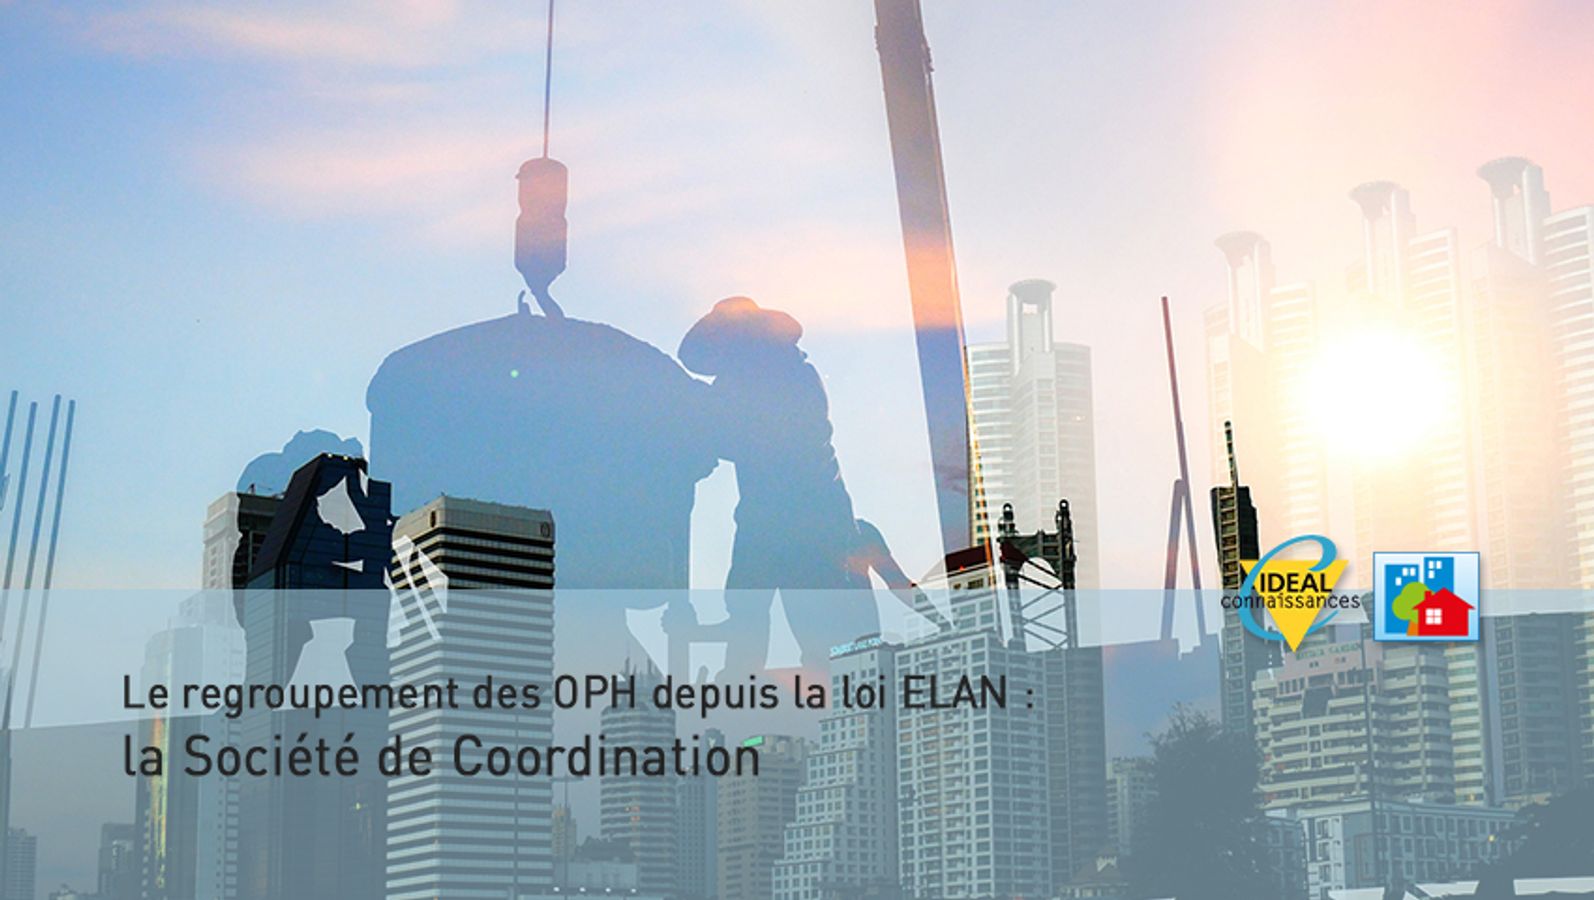 Le regroupement des OPH depuis la loi ELAN : la Société de Coordination